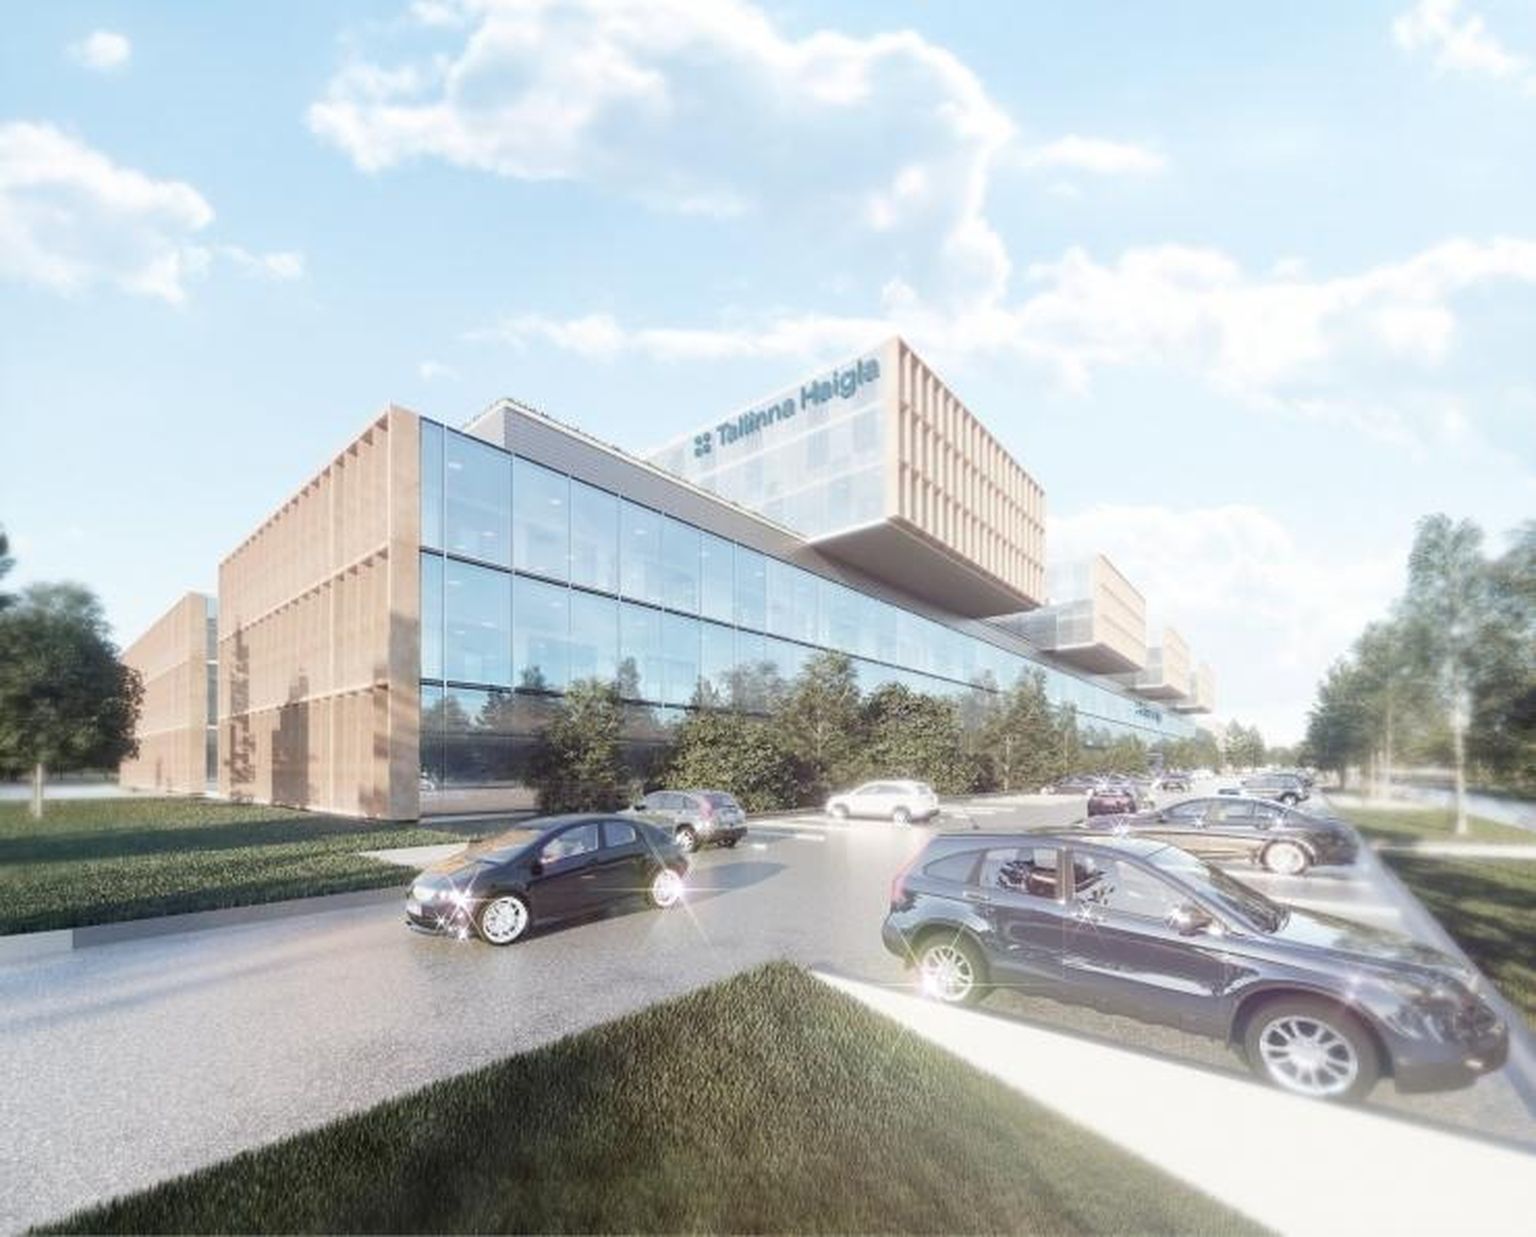 Tulevane Tallinna haigla (pildil) peaks olema järgnevate aastate suurim kinnisvarainvesteering.